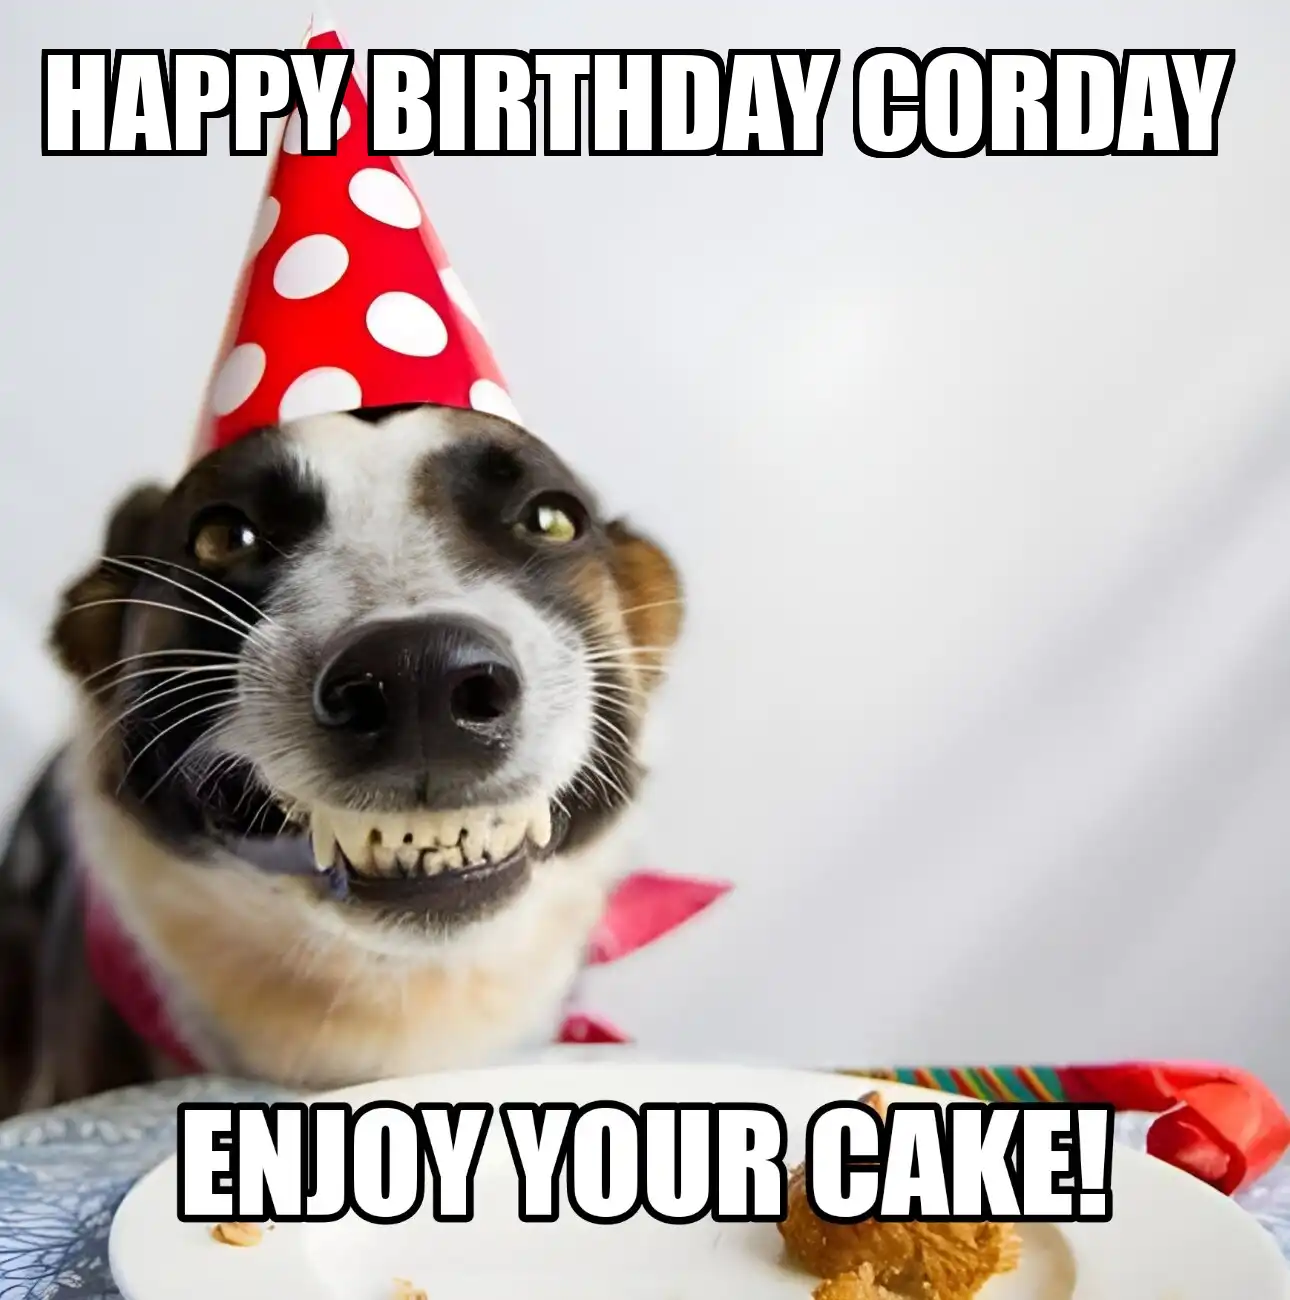 Happy Birthday Corday Enjoy Your Cake Dog Meme